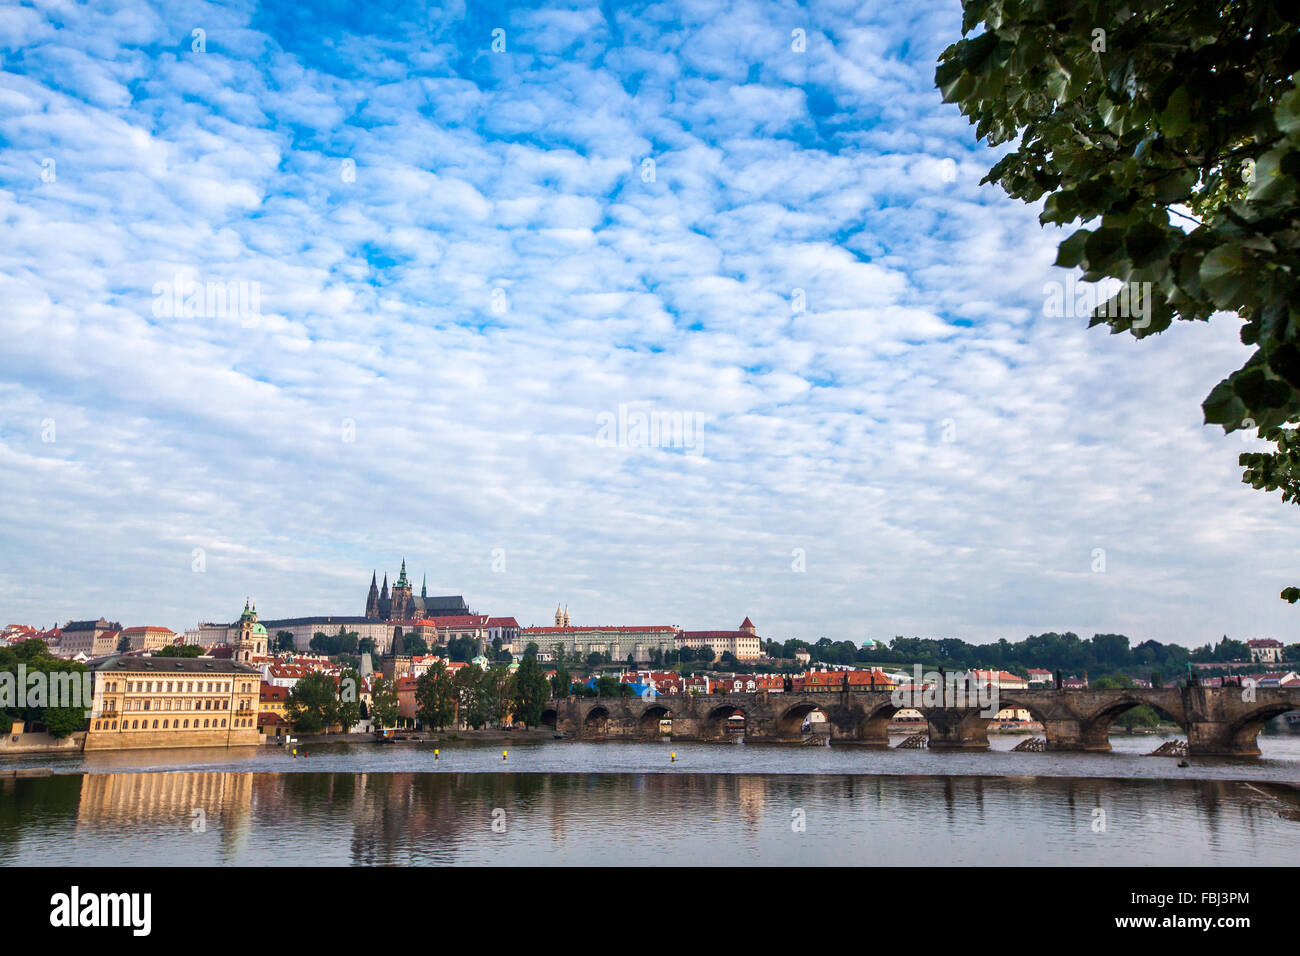 Tourismus und Sehenswürdigkeiten, Blick über bemerkenswerte Sehenswürdigkeit der Prager Karlsbrücke. Gutes Wetter, Sommertag, blauer Himmel, ruhiger Fluss Vlt Stockfoto